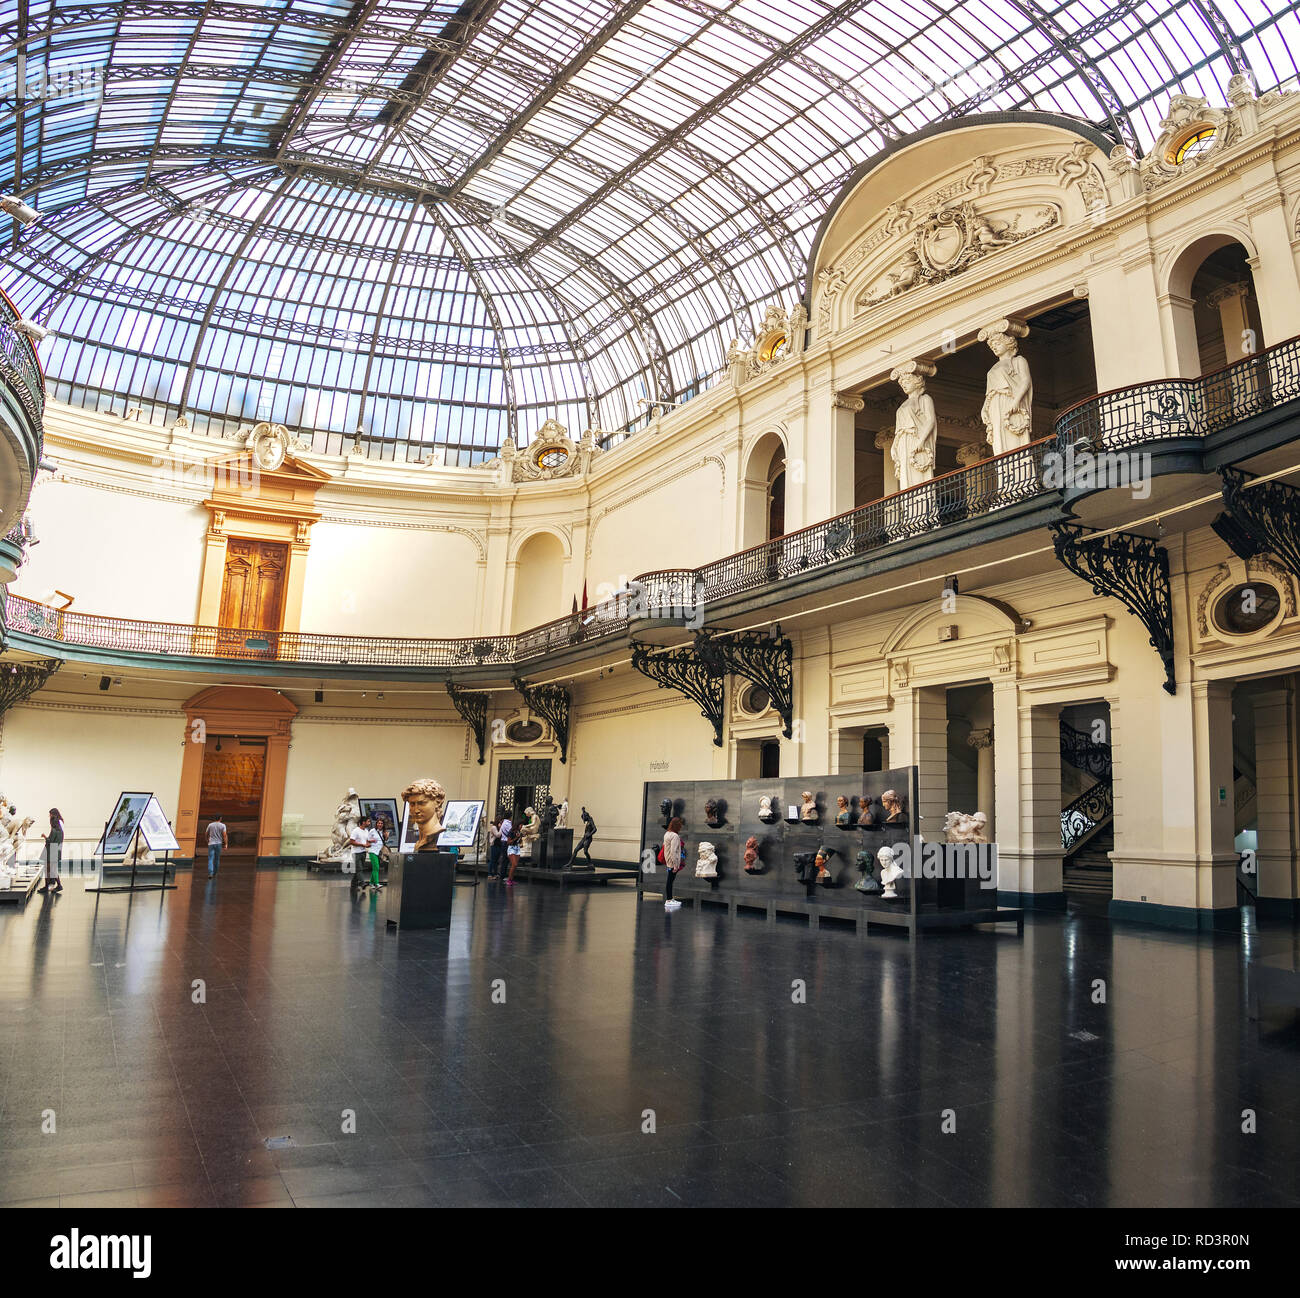 Fine Arts Museum (Museo de Bellas Artes) interior - Santiago, Chile Stock Photo